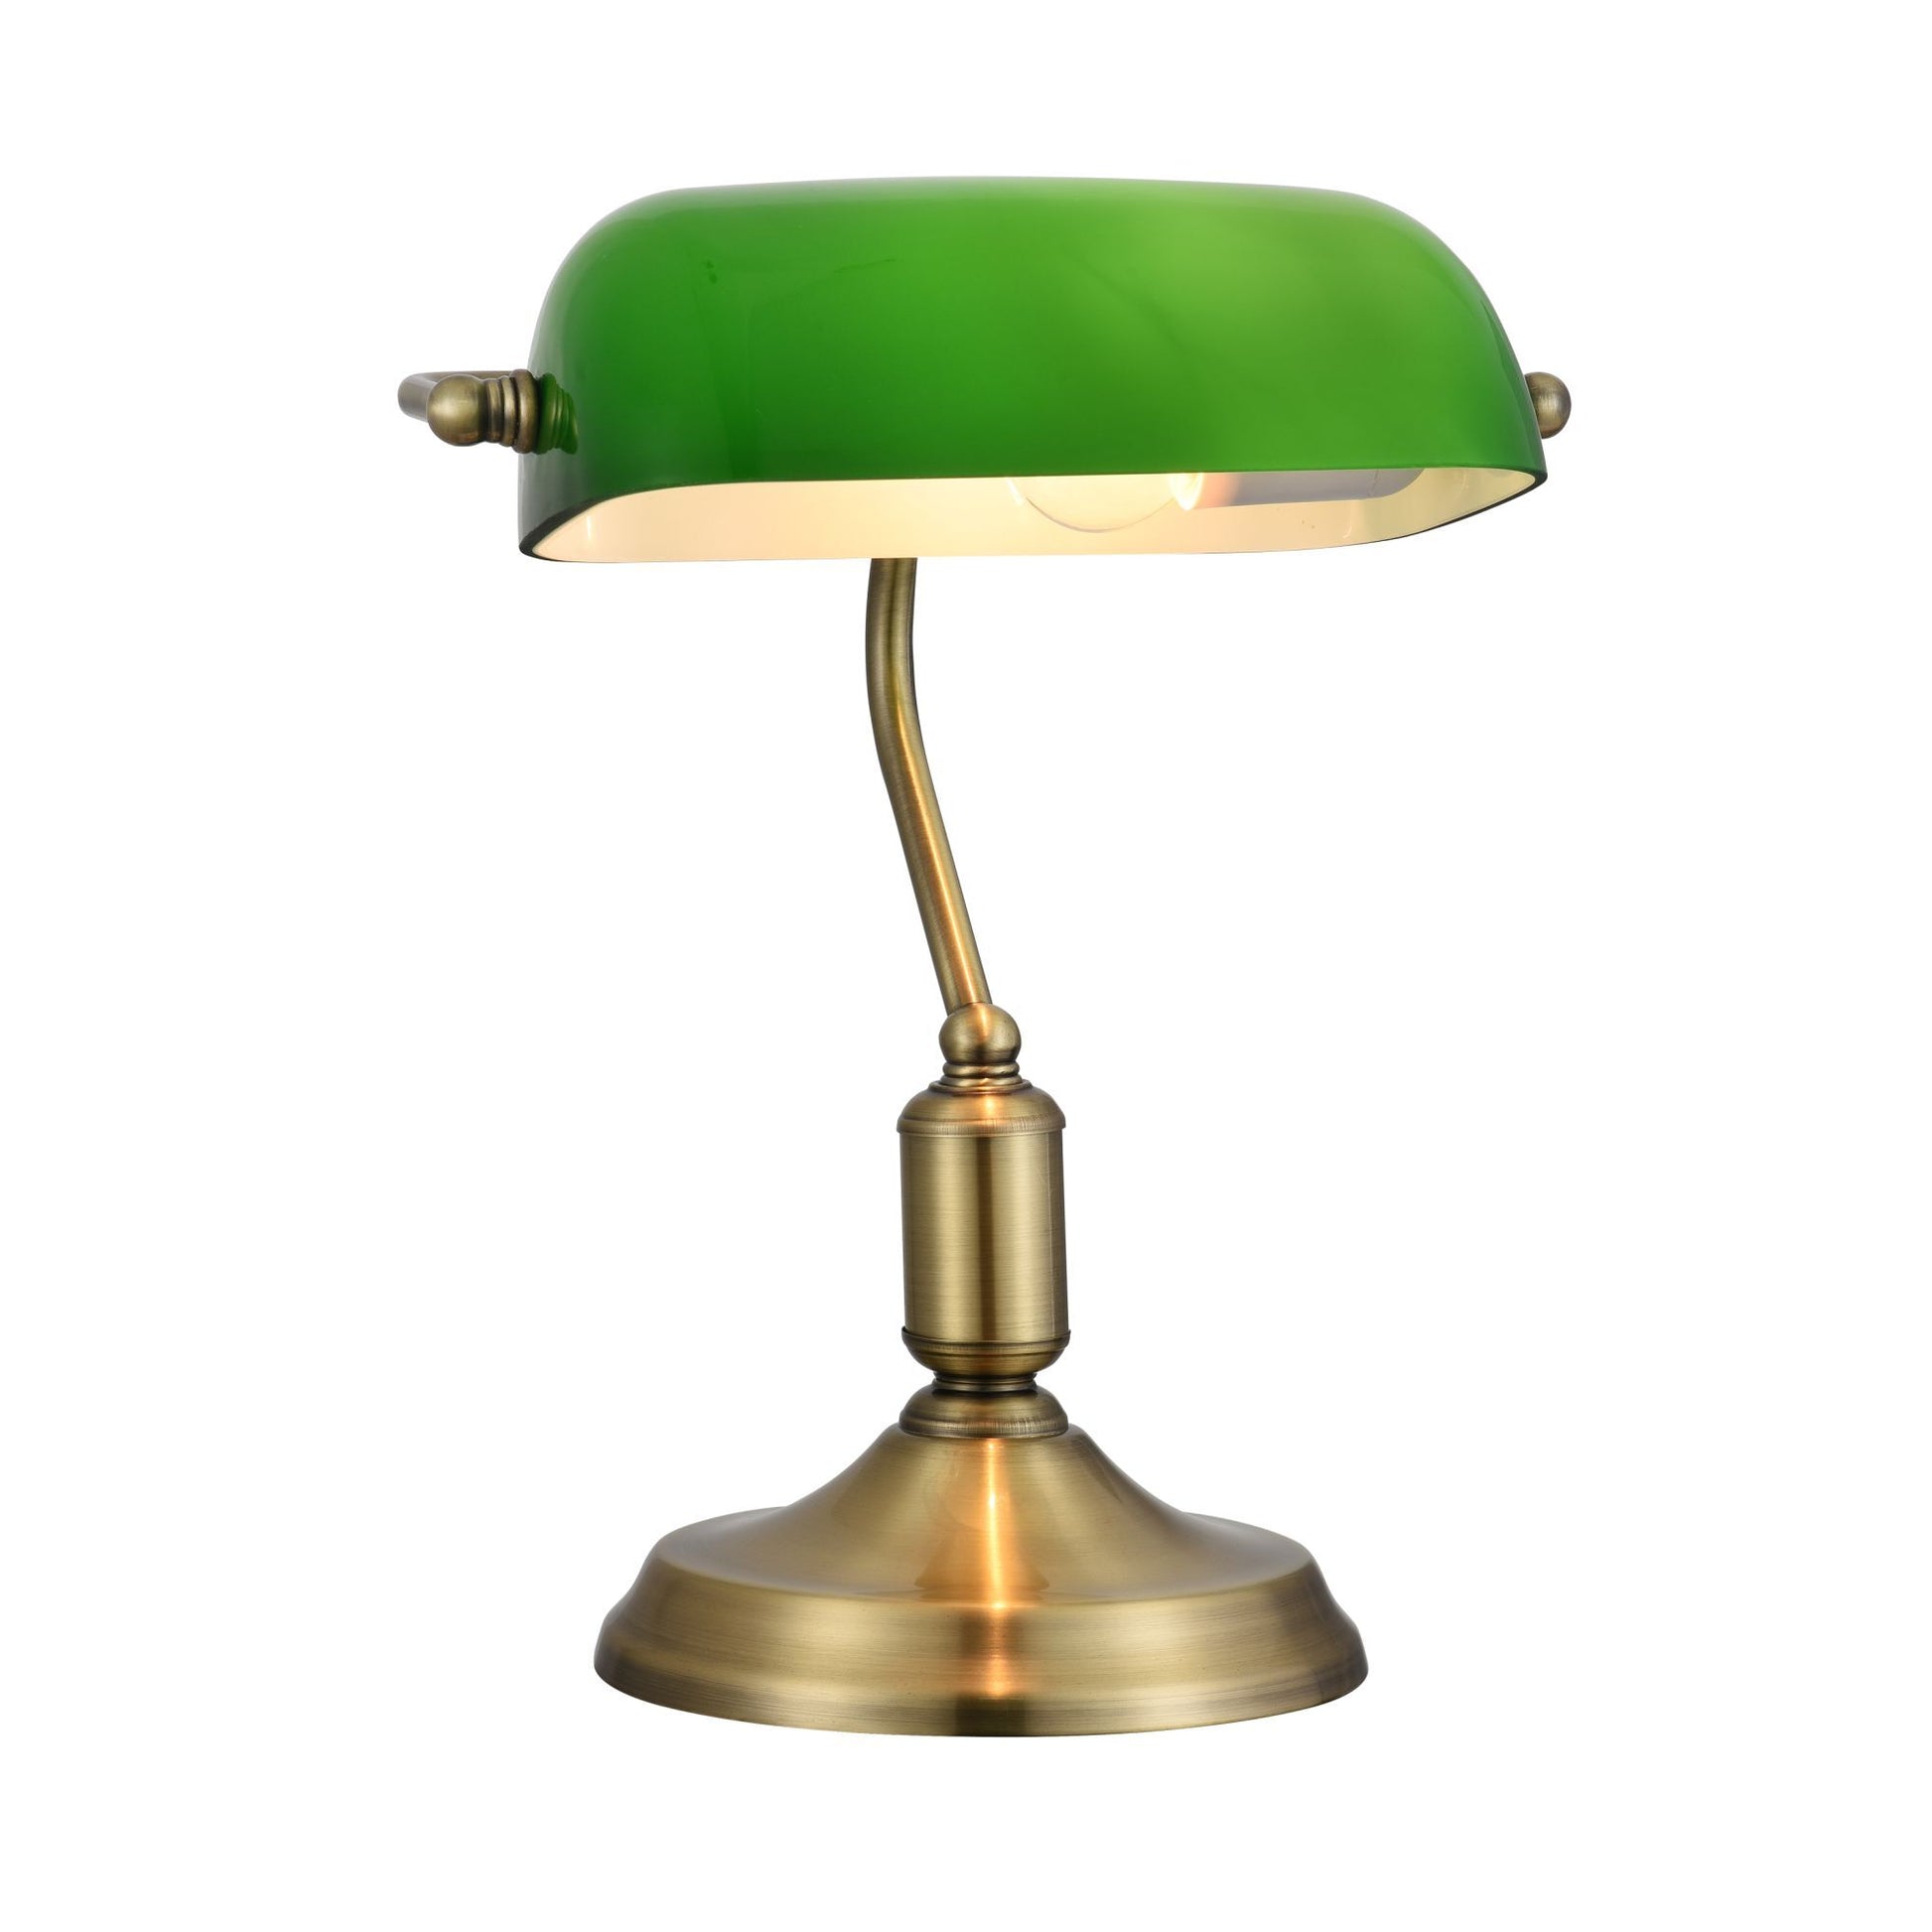 Une Lampe de Banquier verte iconique.